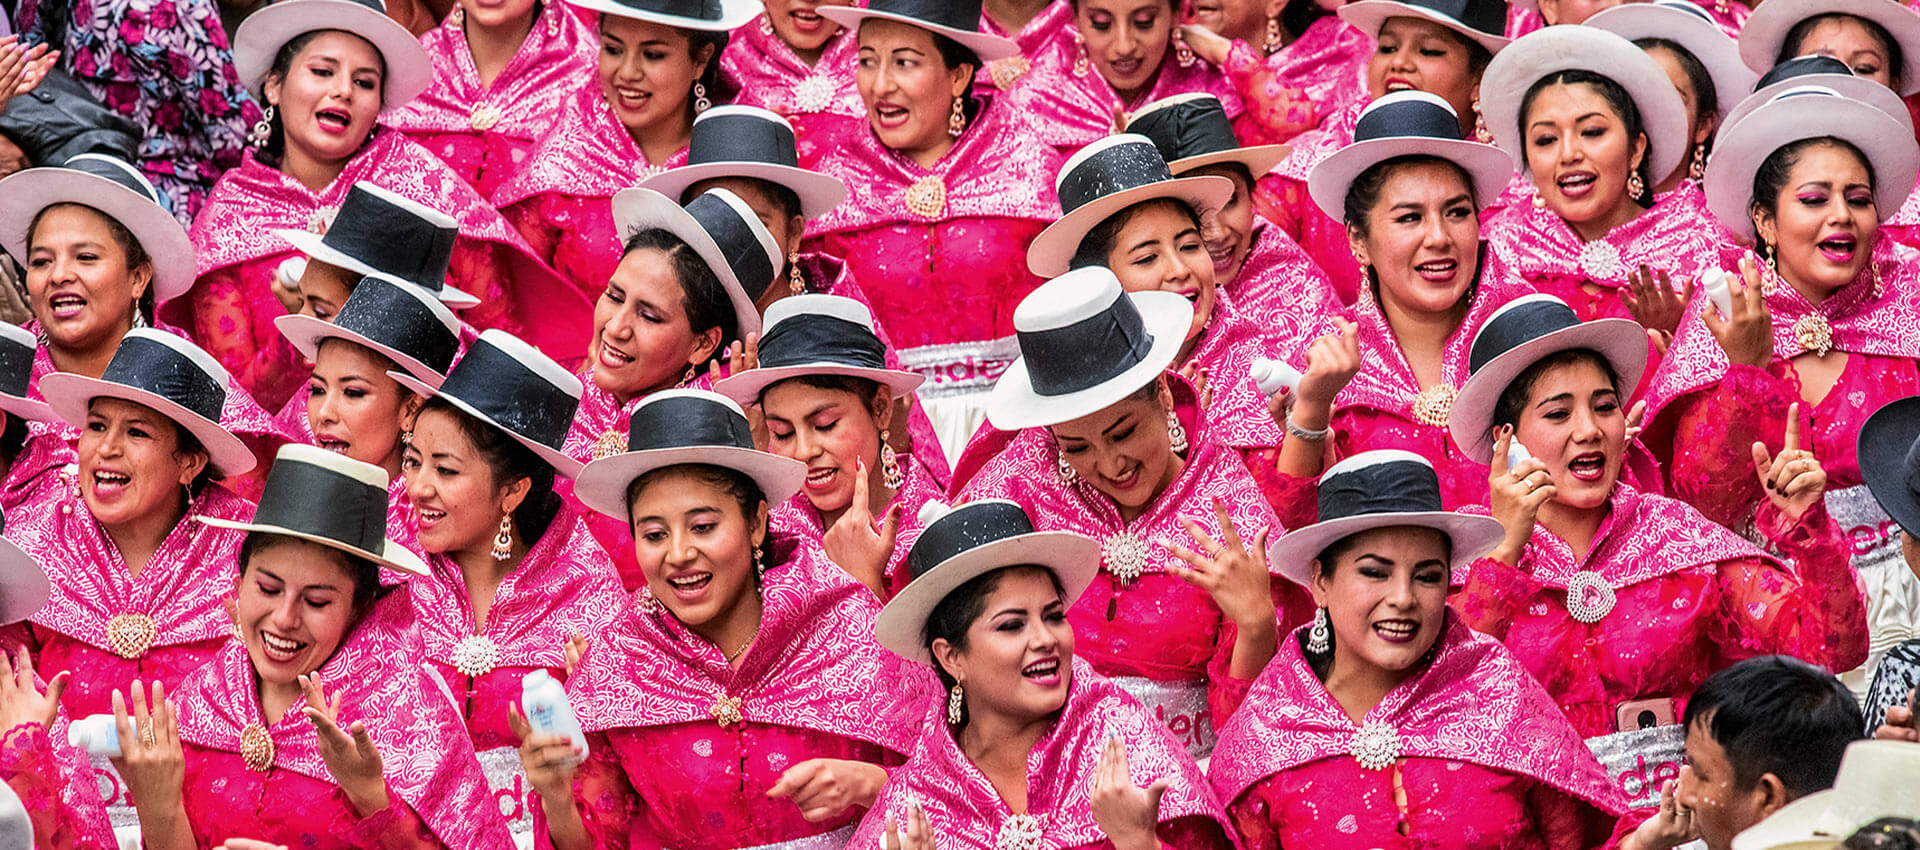 Fiestas y danzas del Perú - Fondo Editorial BCP